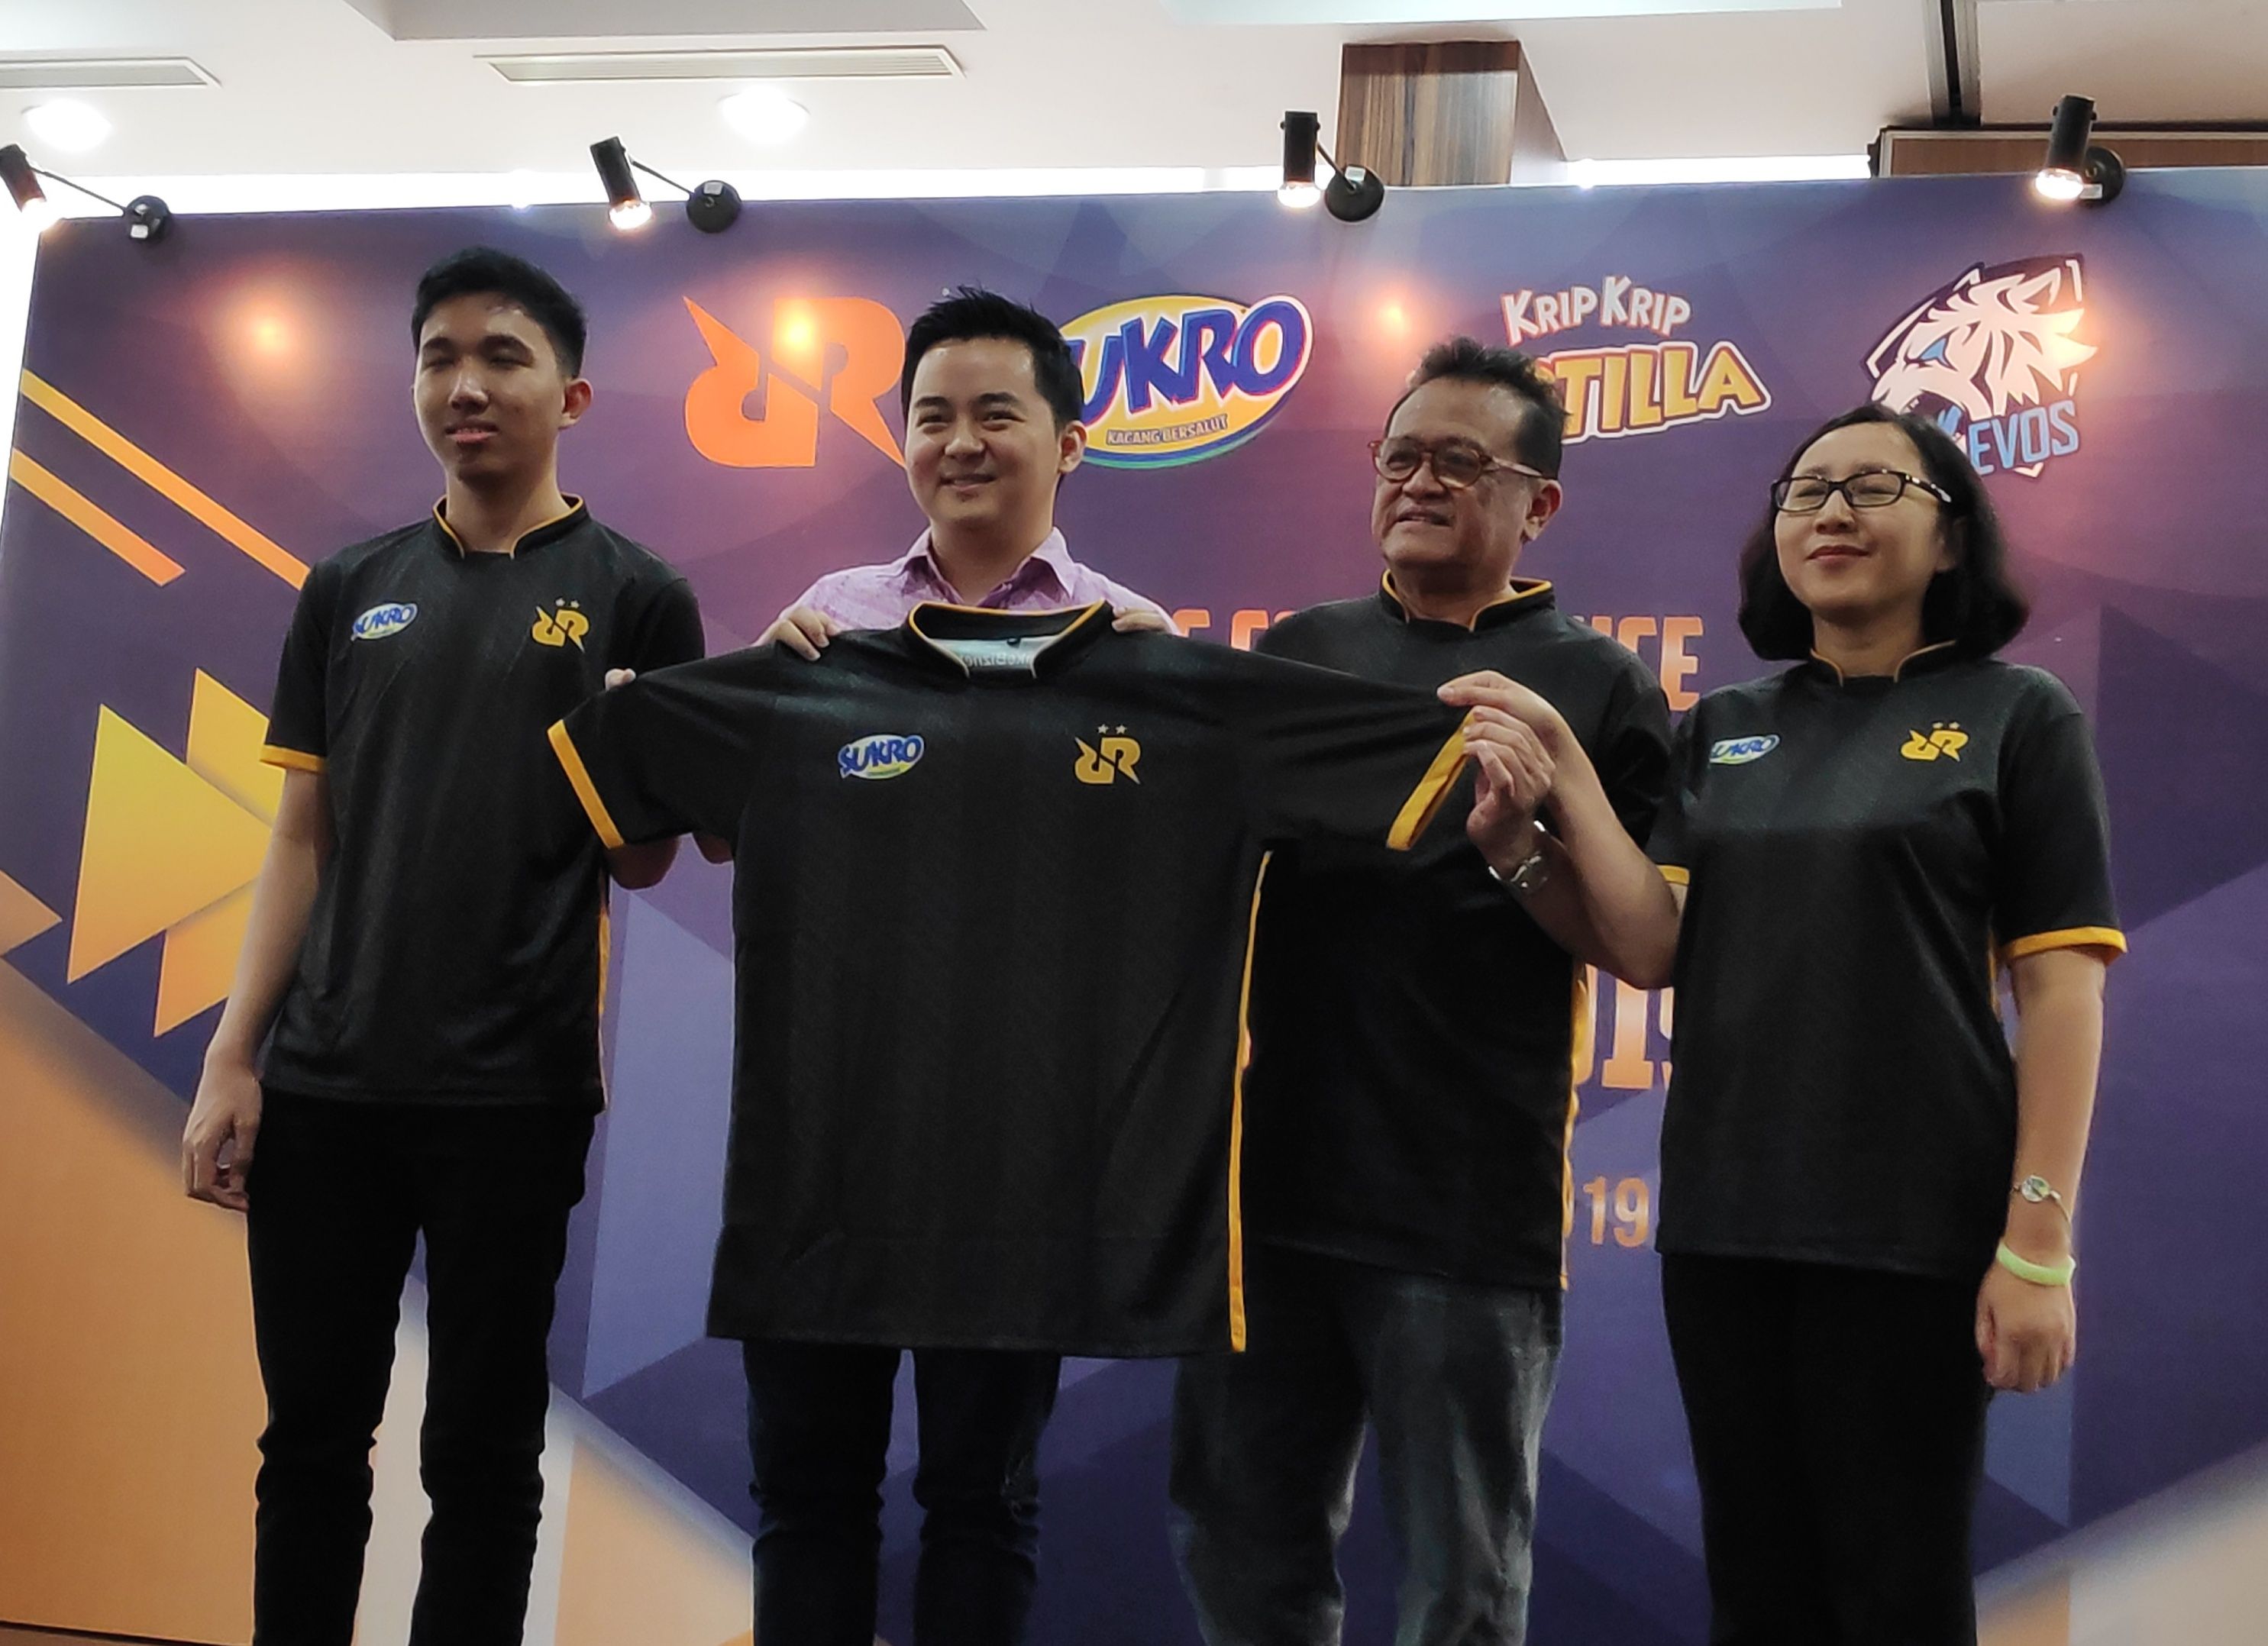 RRQ Lemon, Andrian Pauline (CEO Team RRQ), dan perwakilan Sukro saat menunjukkan jersey sponsor mereka